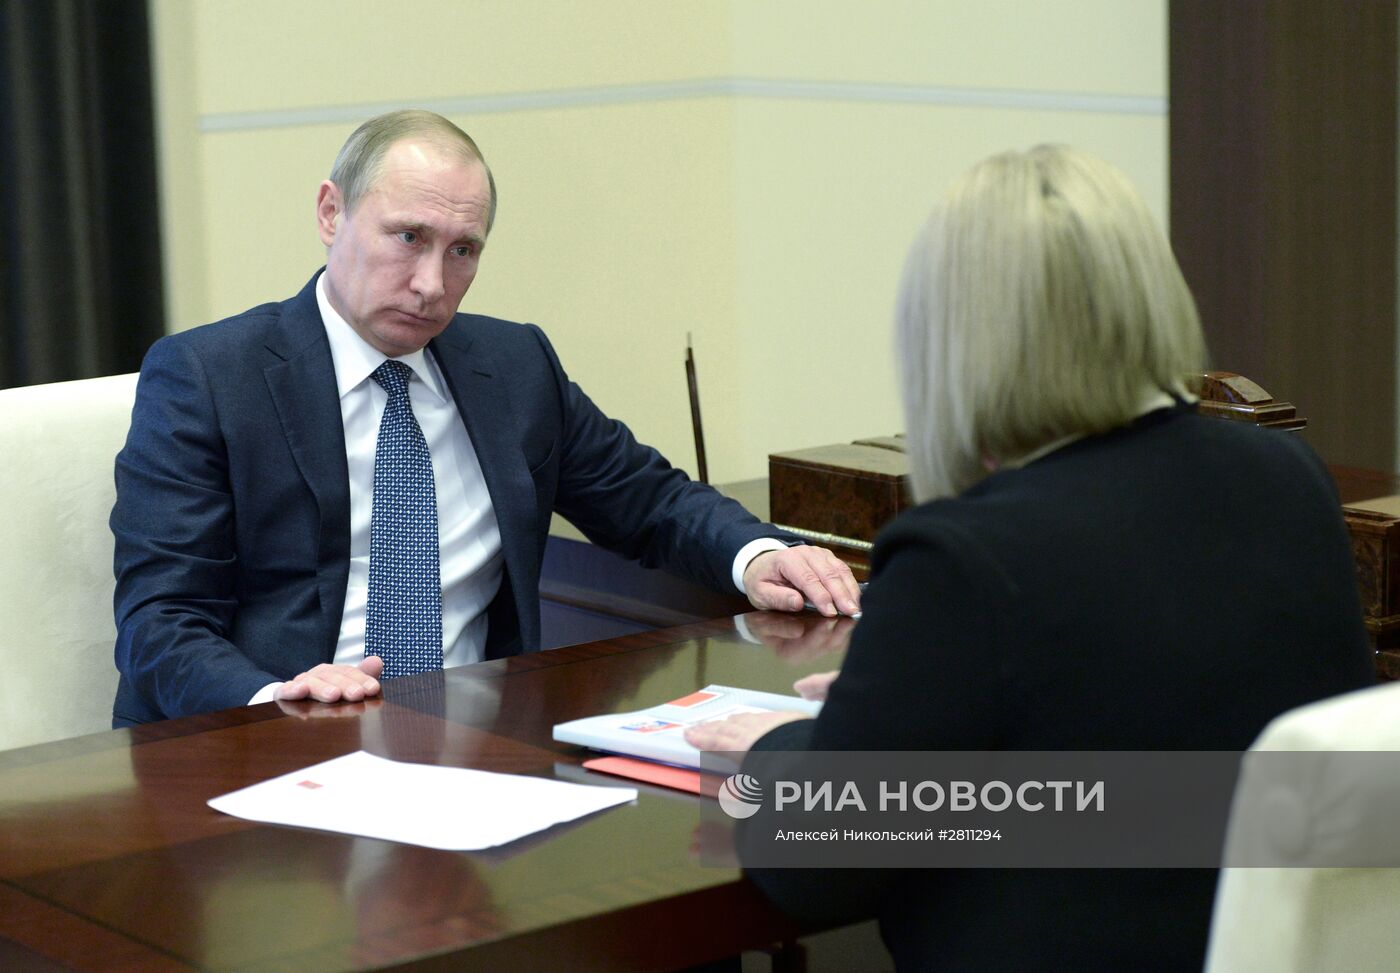 Президент РФ В. Путин встретился с уполномоченным по правам человека Э. Памфиловой